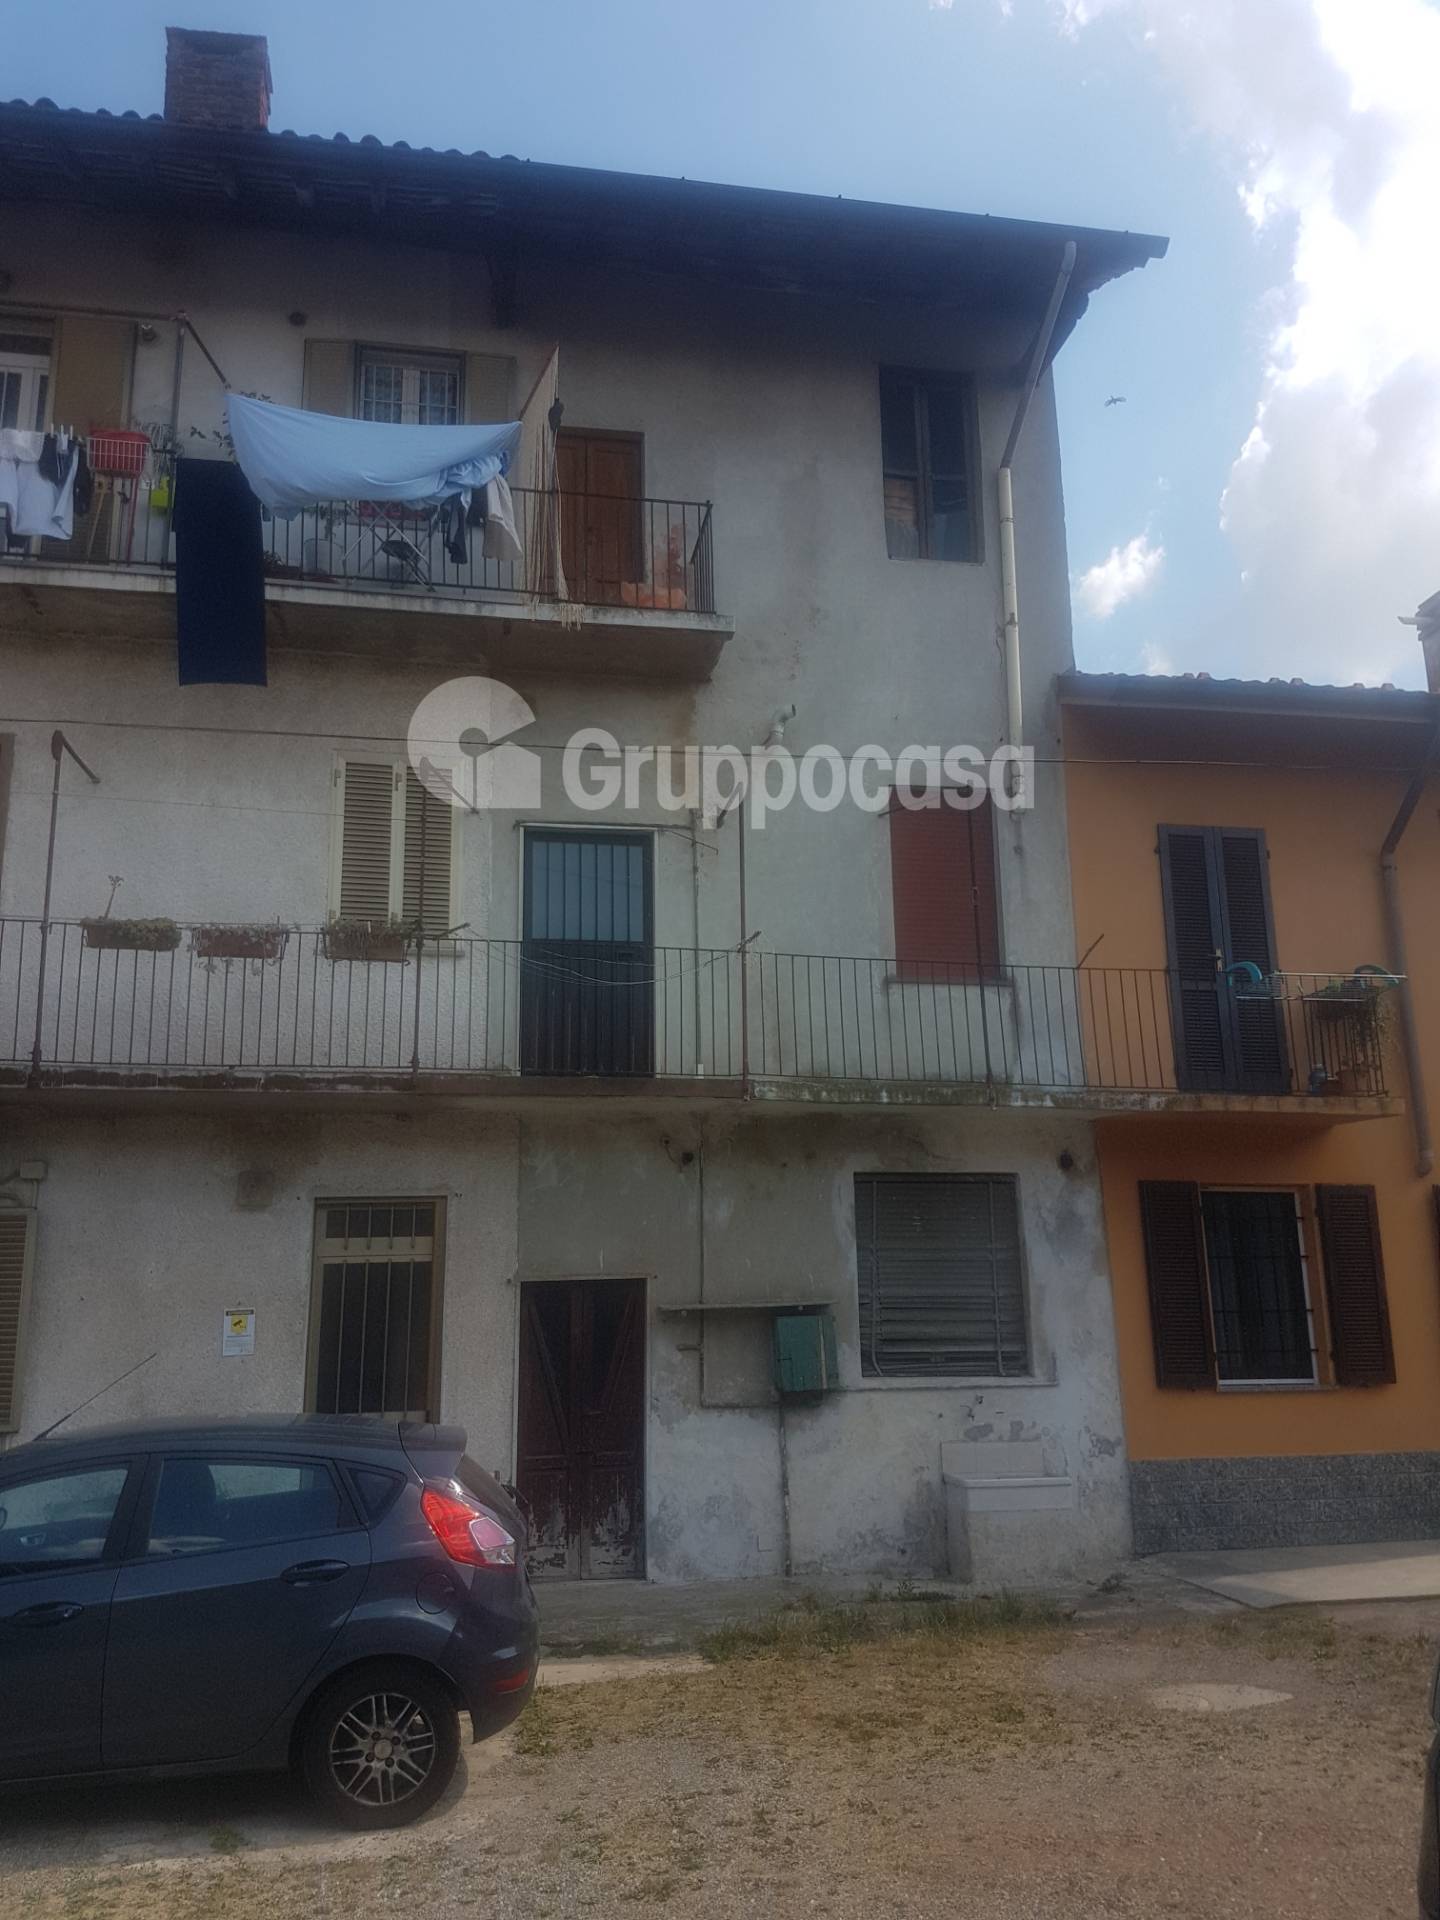 Appartamento in vendita a Marcallo con Casone, 5 locali, zona o, prezzo € 81.000 | PortaleAgenzieImmobiliari.it